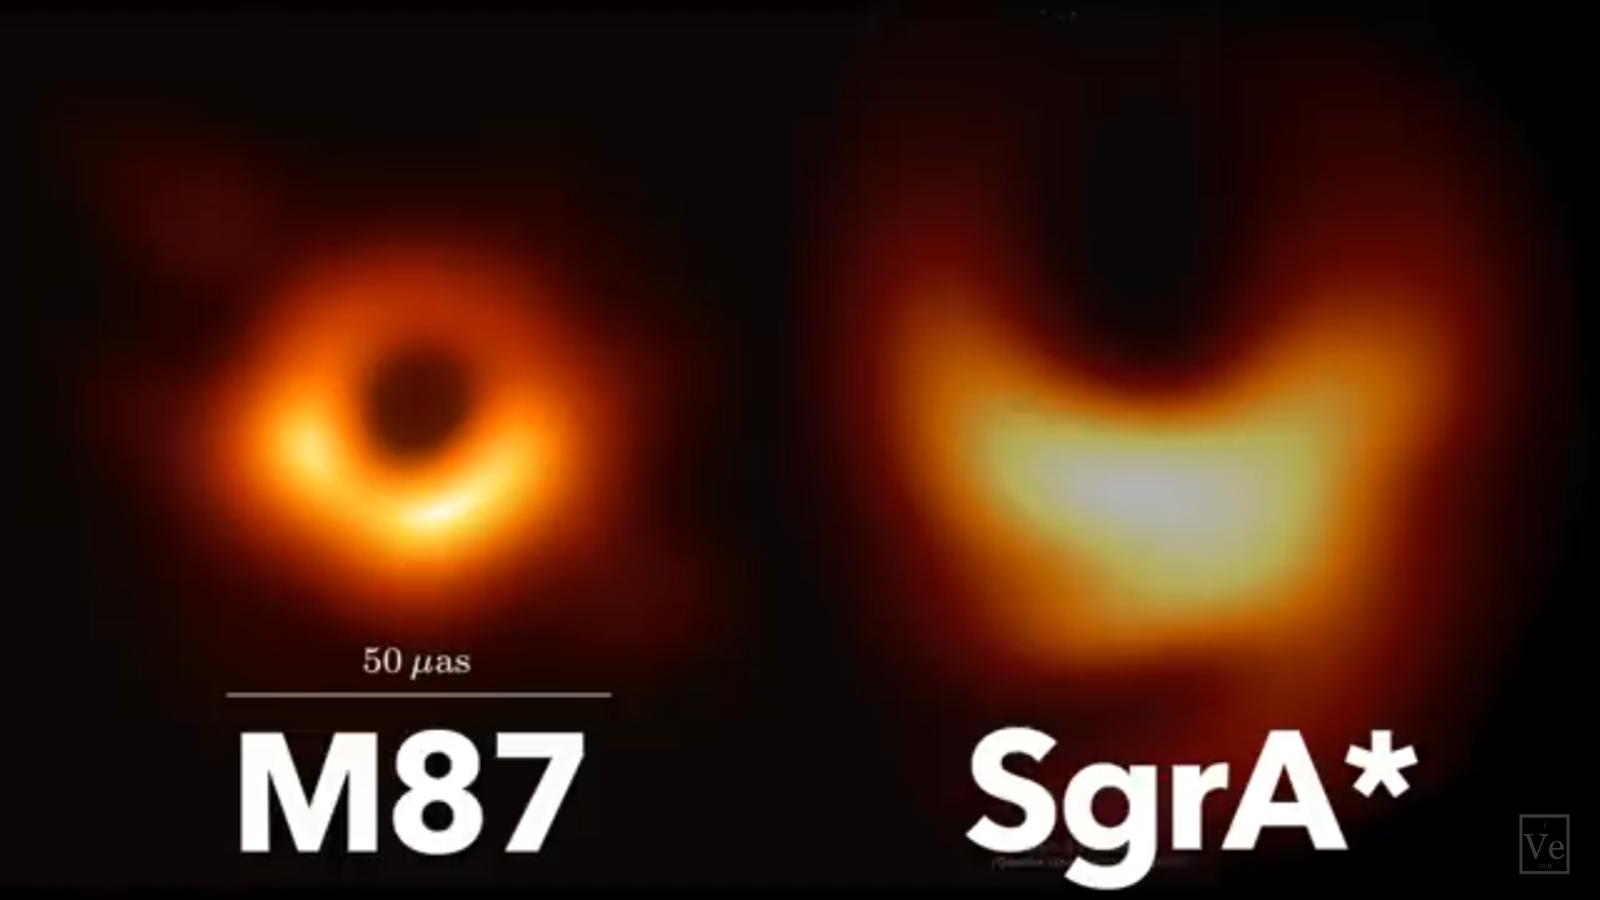 Vergleich der Schwarzen Löcher M87 und Sgr A*